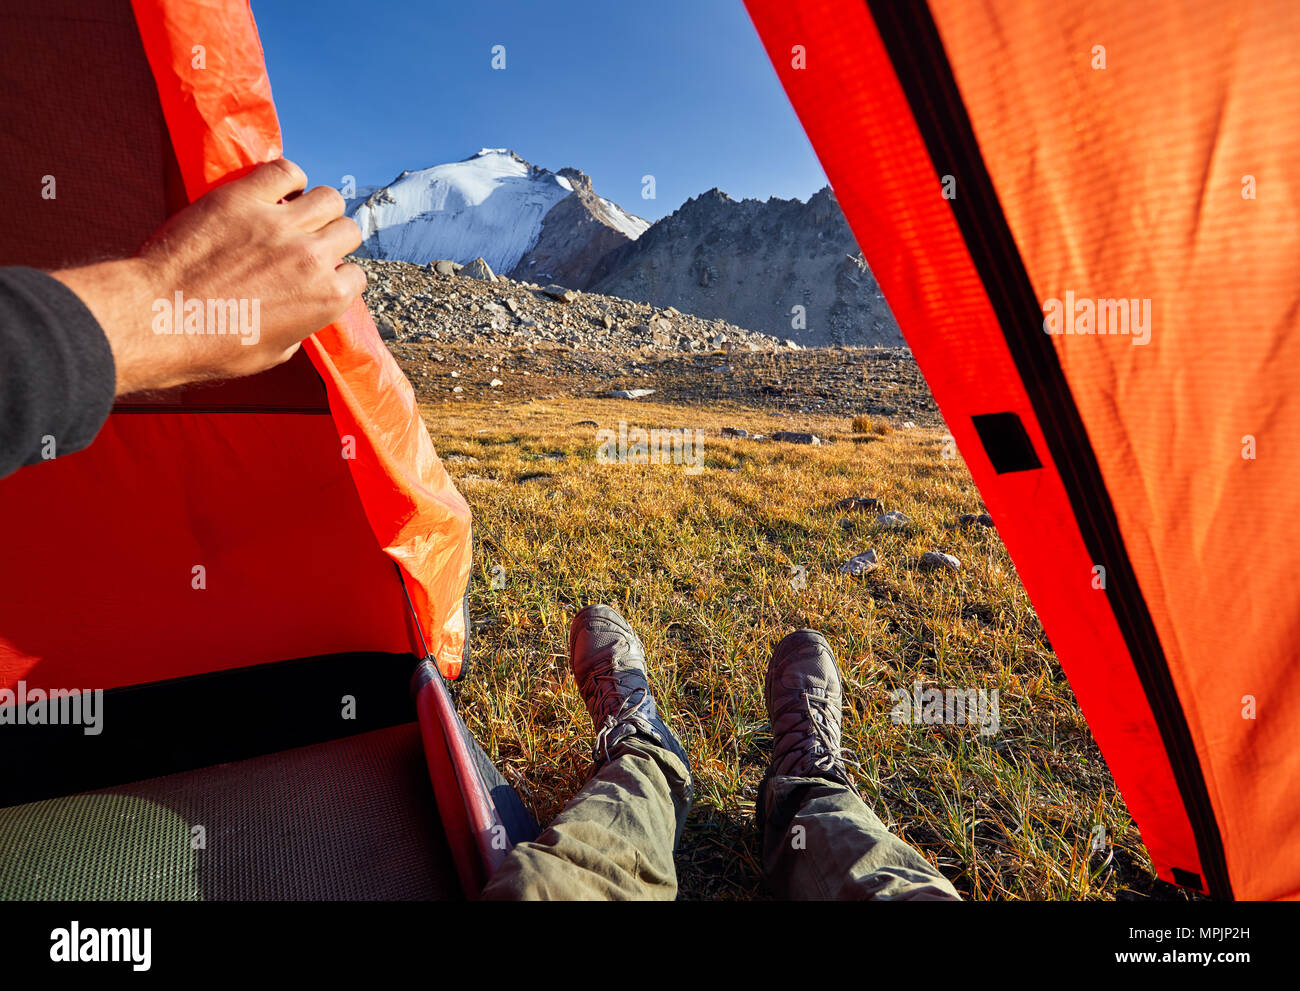 Escursionista gambe dalla tenda arancione con la vista bella vertice nevoso Foto Stock